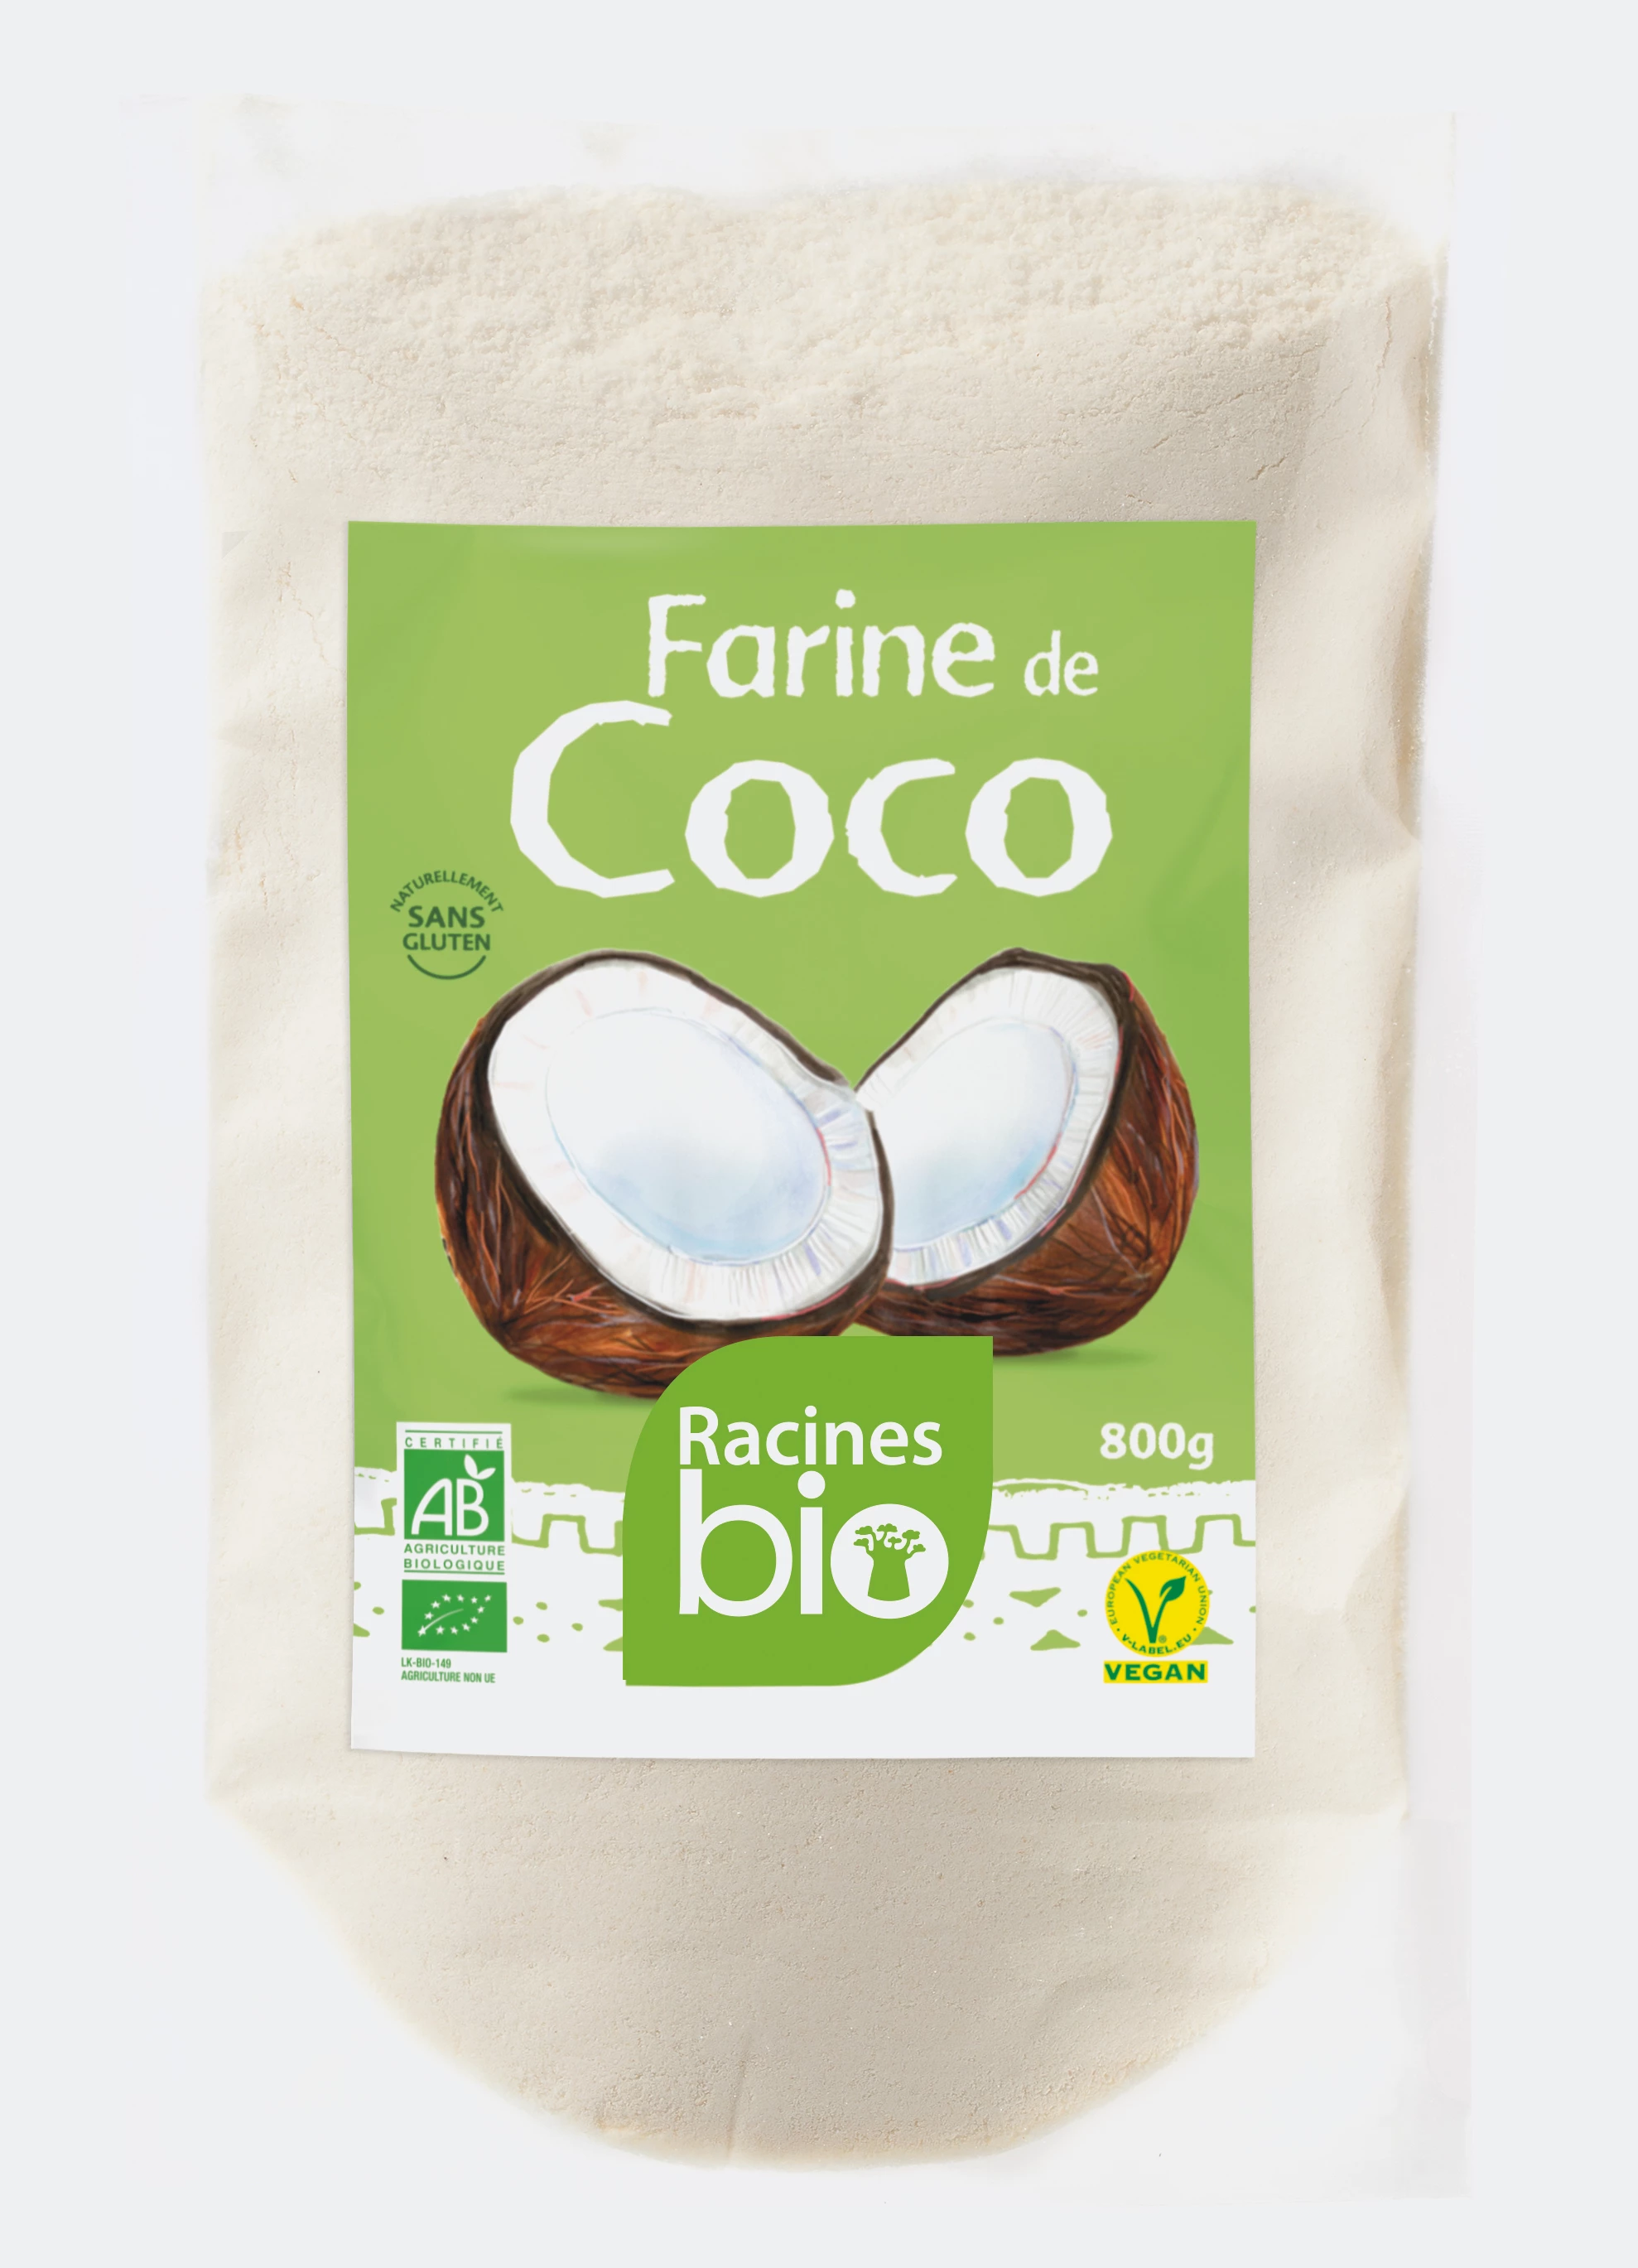 Farina Di Cocco (10 X 800 G) - Racines Bio